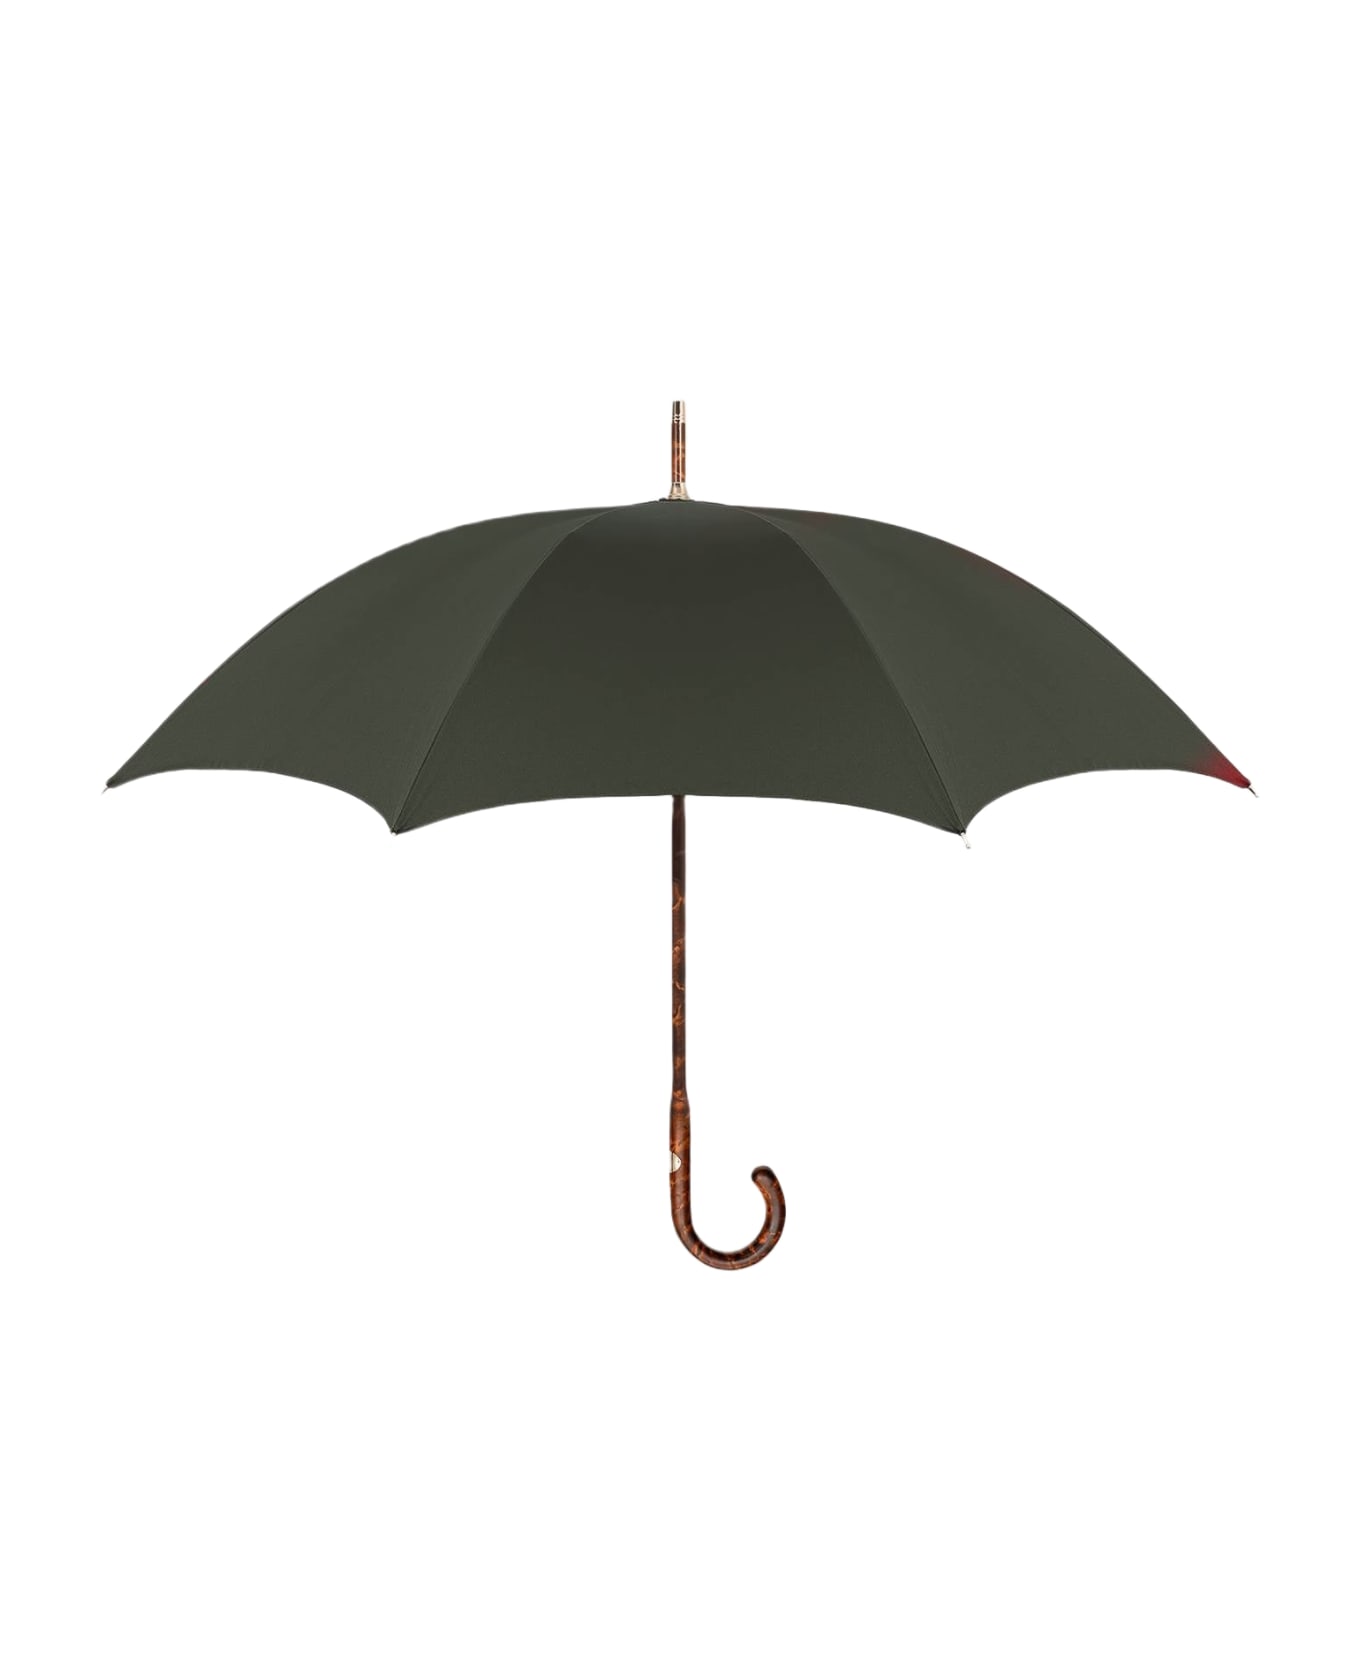 Larusmiani Umbrella Travel Umbrella - Olive 傘